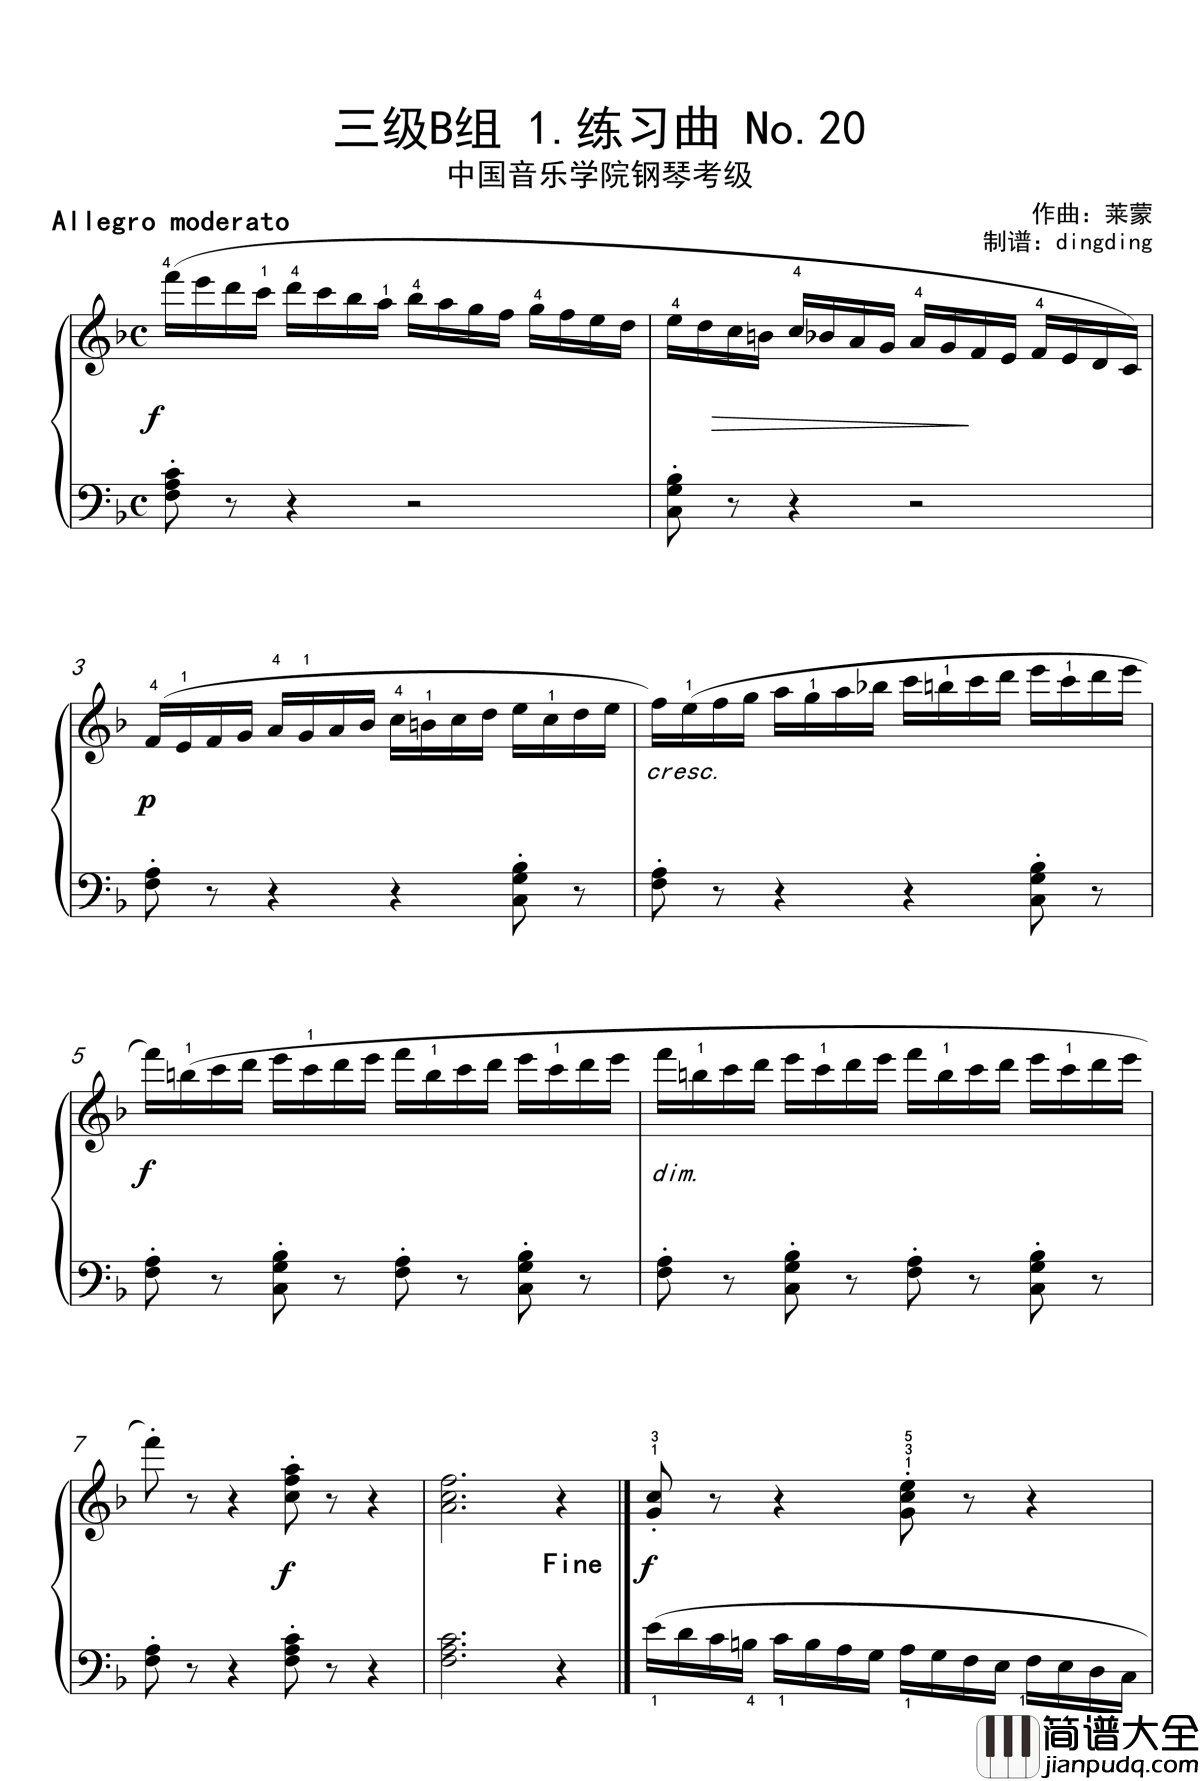 中国音乐学院考三级B组_1.练习曲_No.20钢琴谱_莱蒙